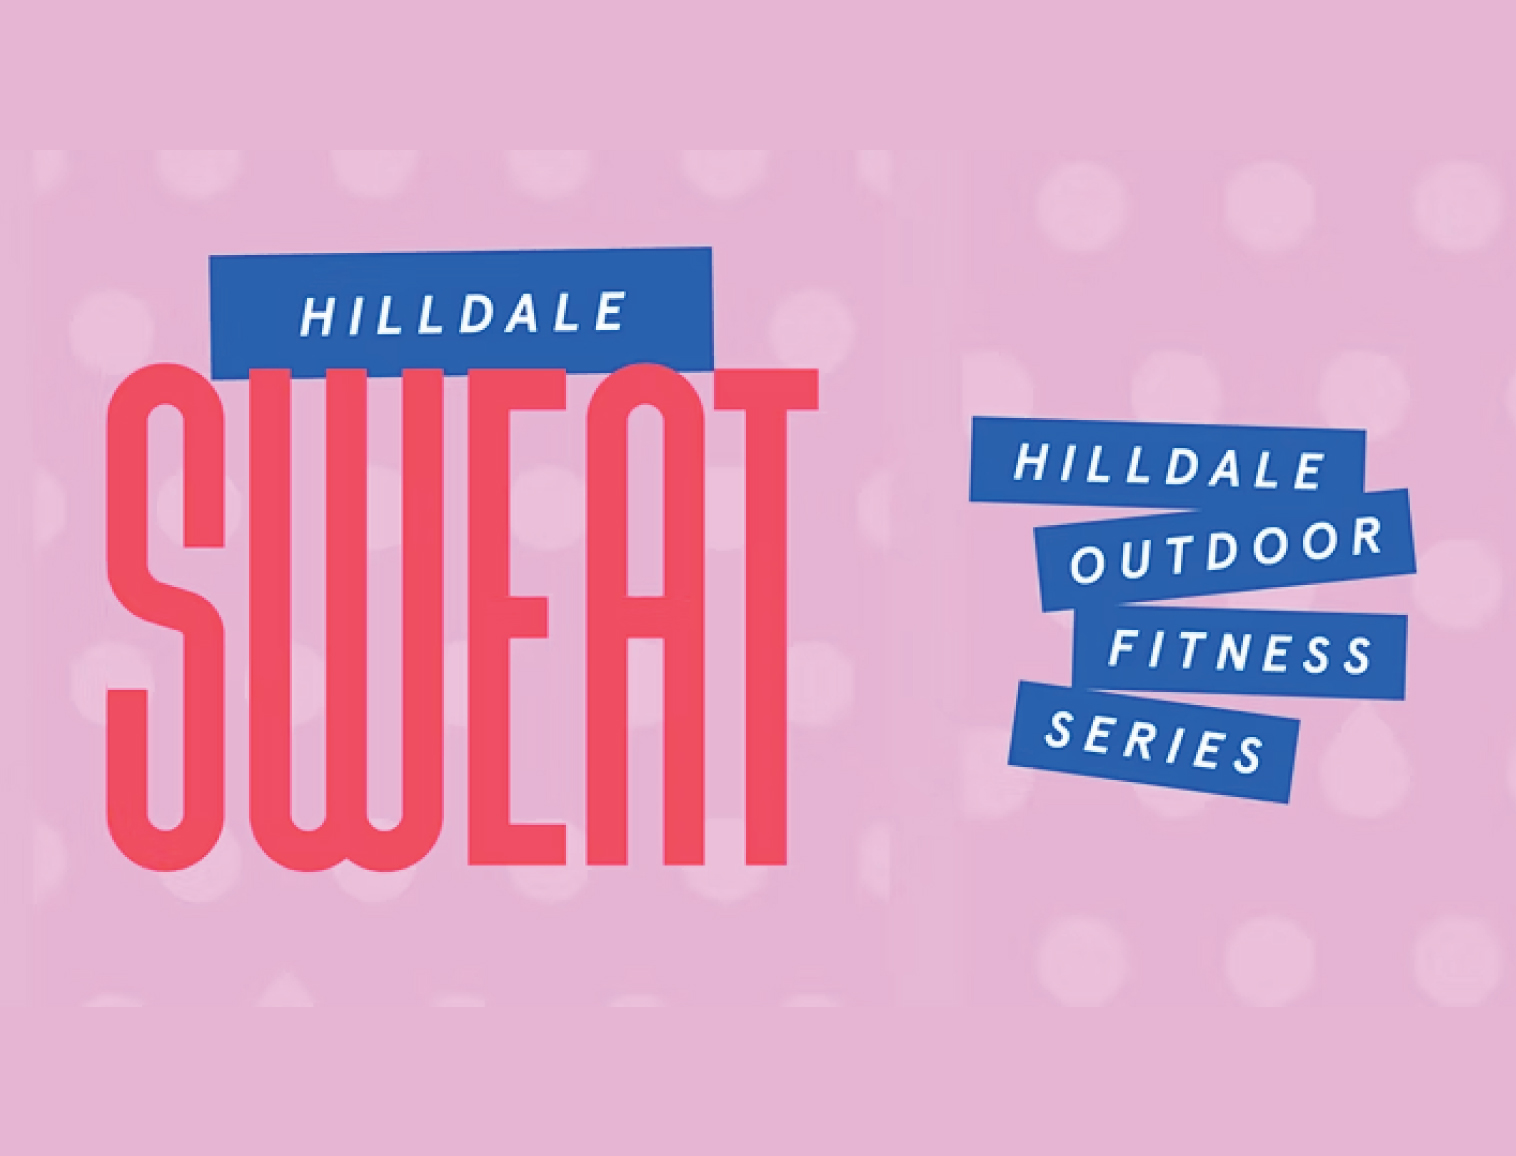 Hilldale Sweat is BACK